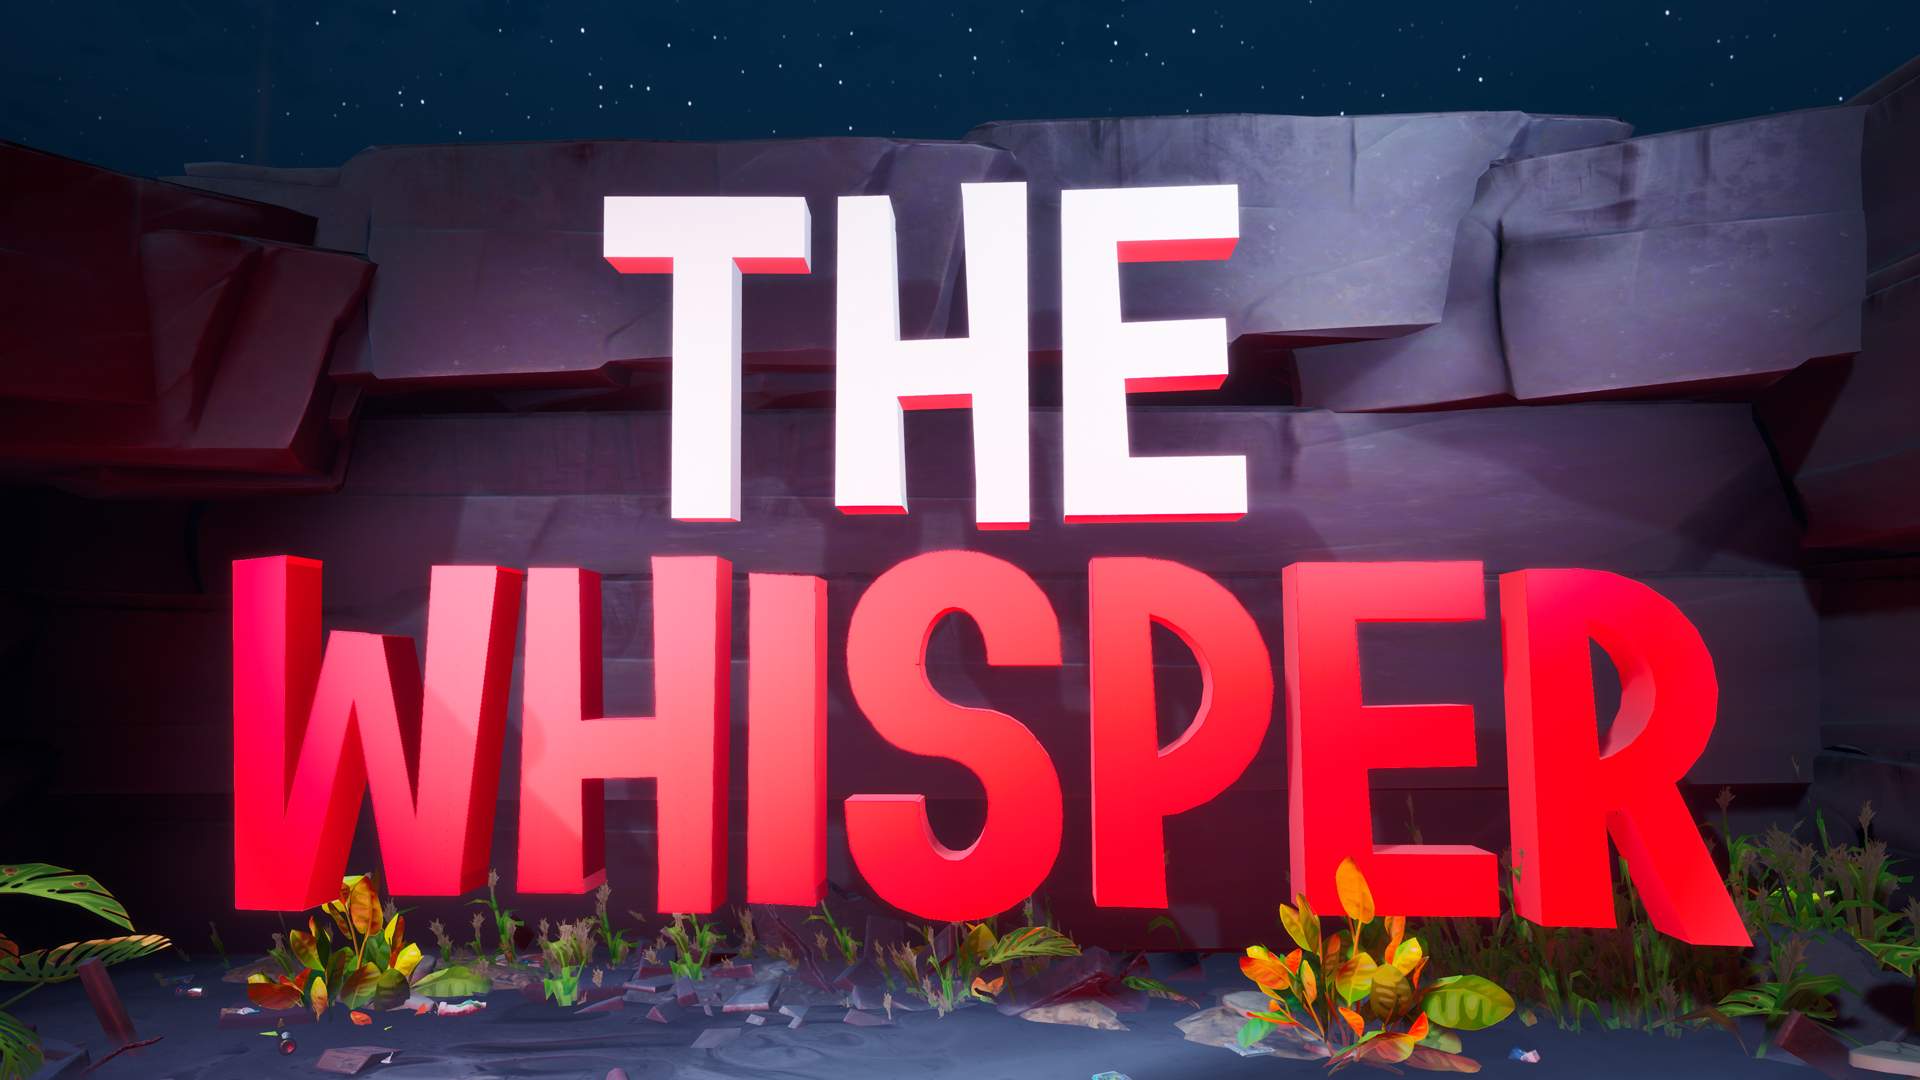 THE WHISPER image 2